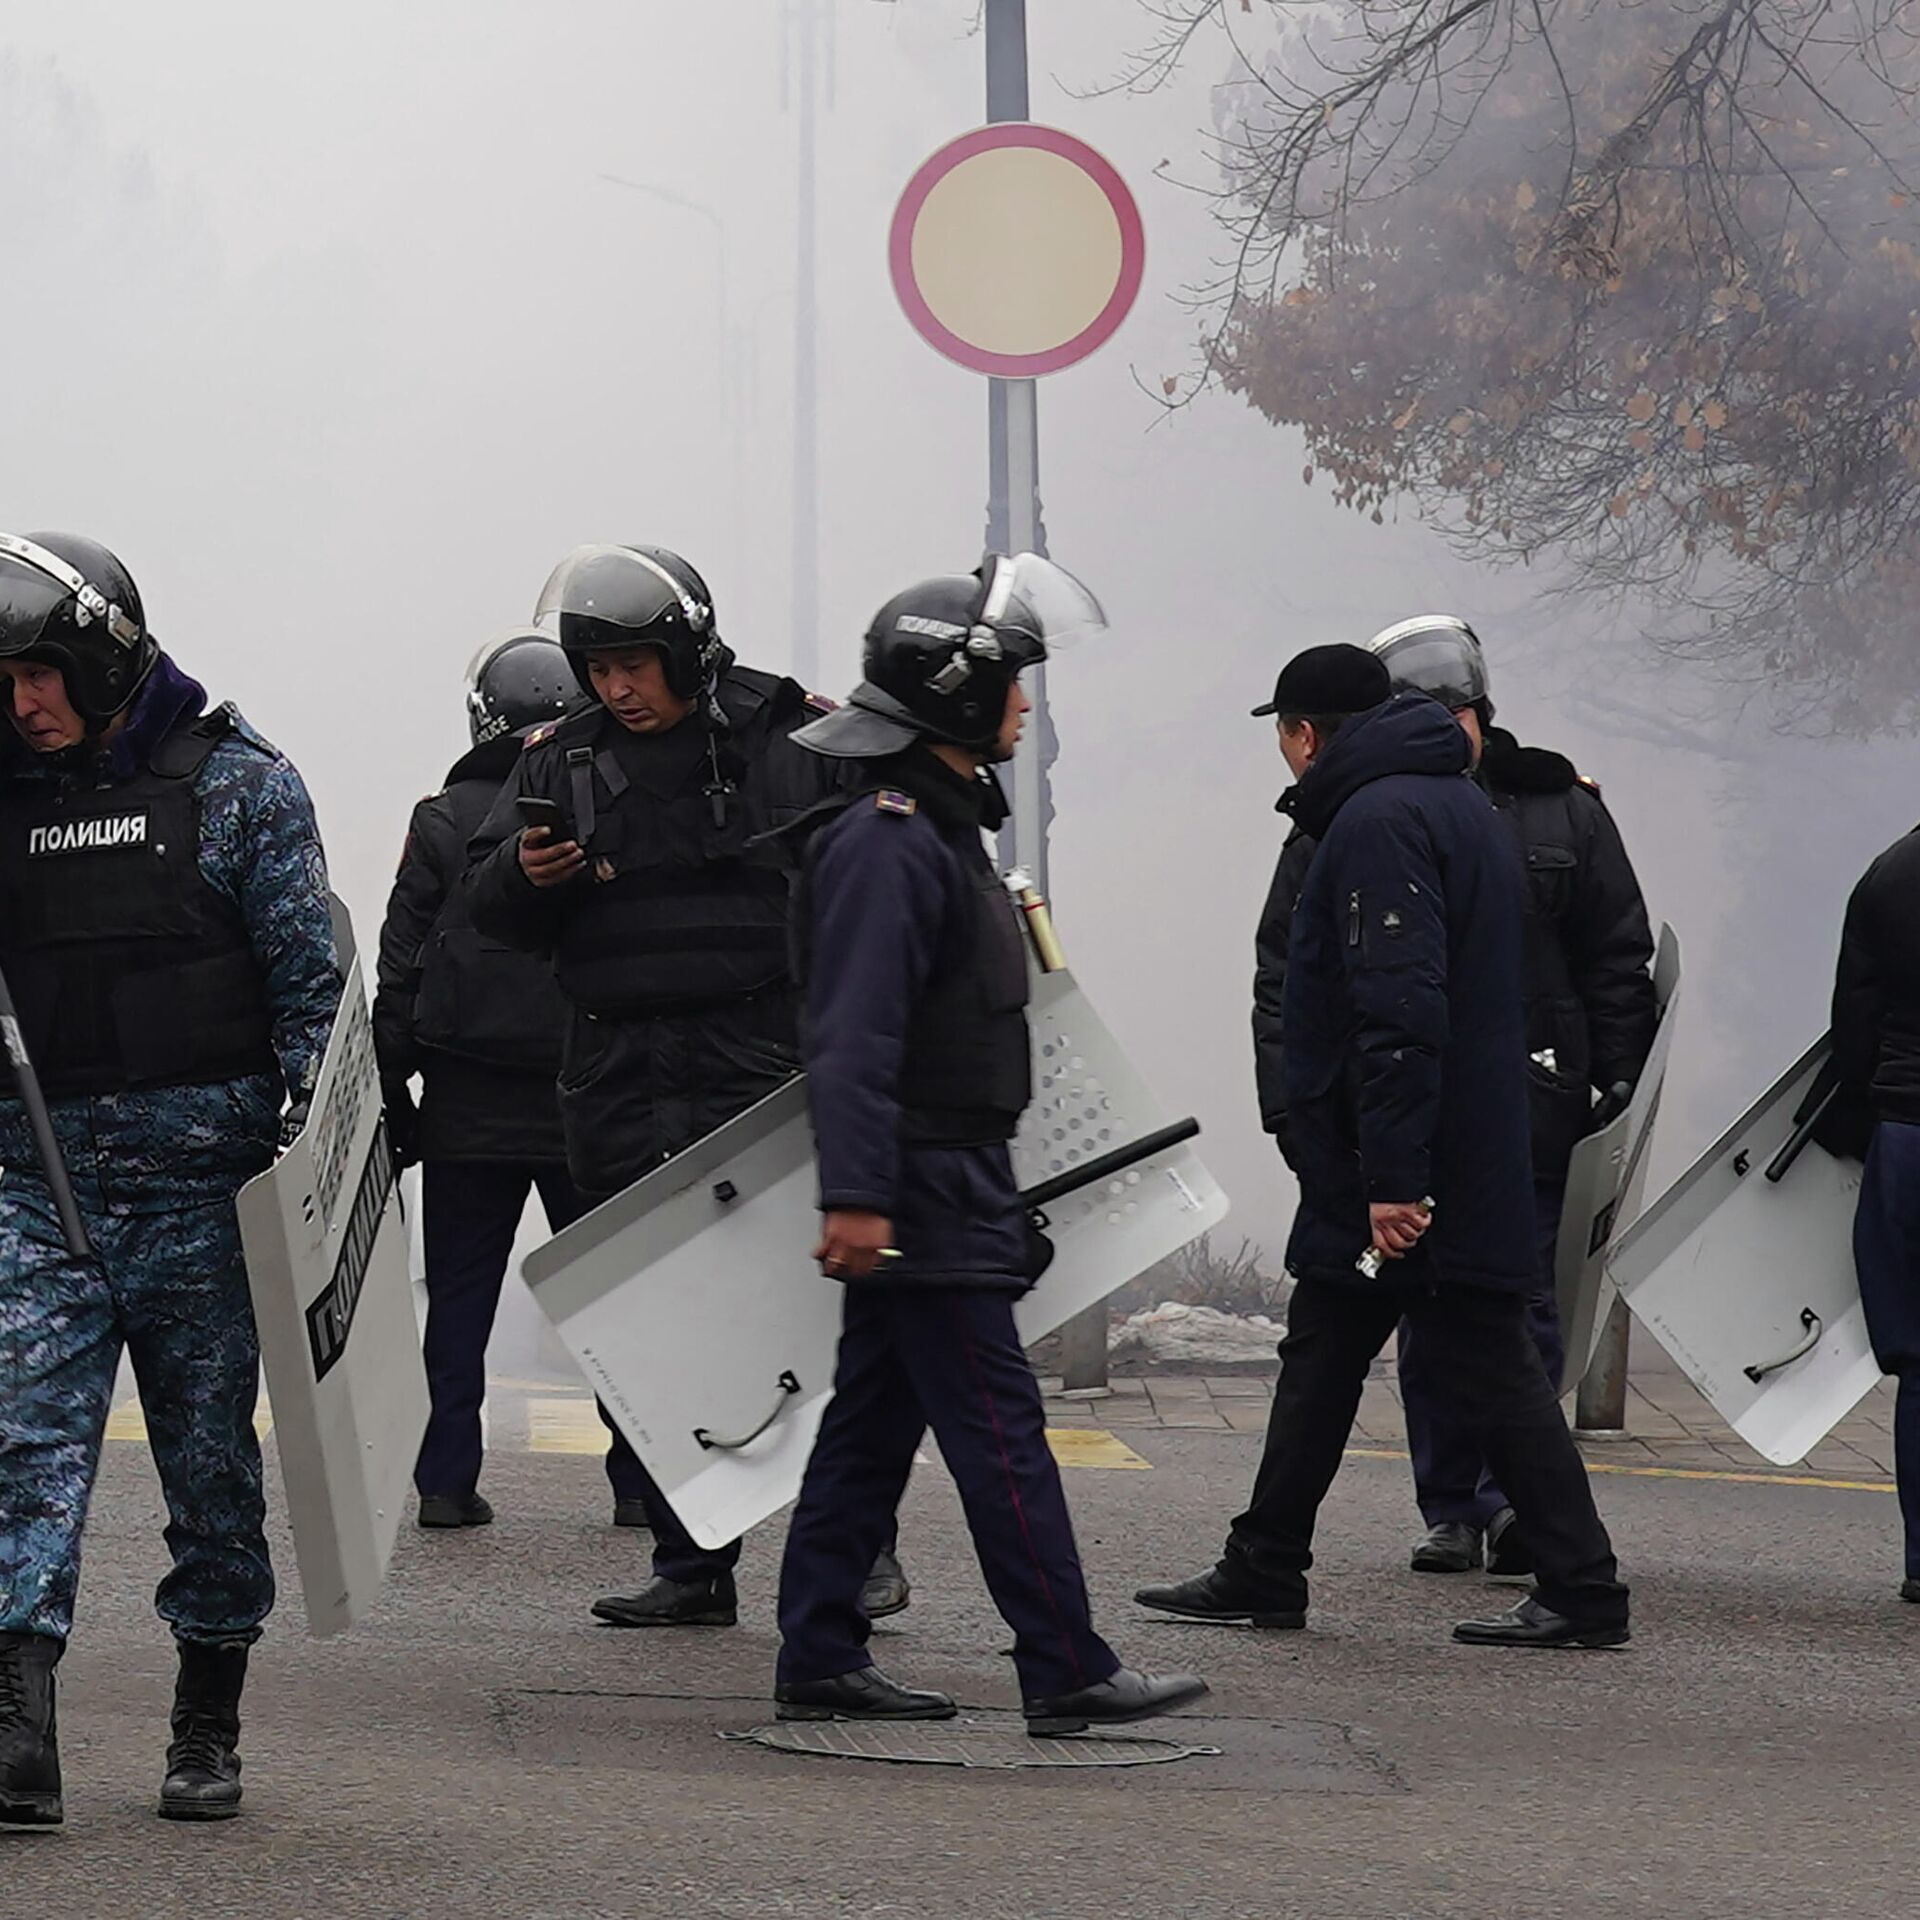 Новости 1 канала про теракт. Погромы в Казахстане. Силовики окружили. Полиция оцепила.